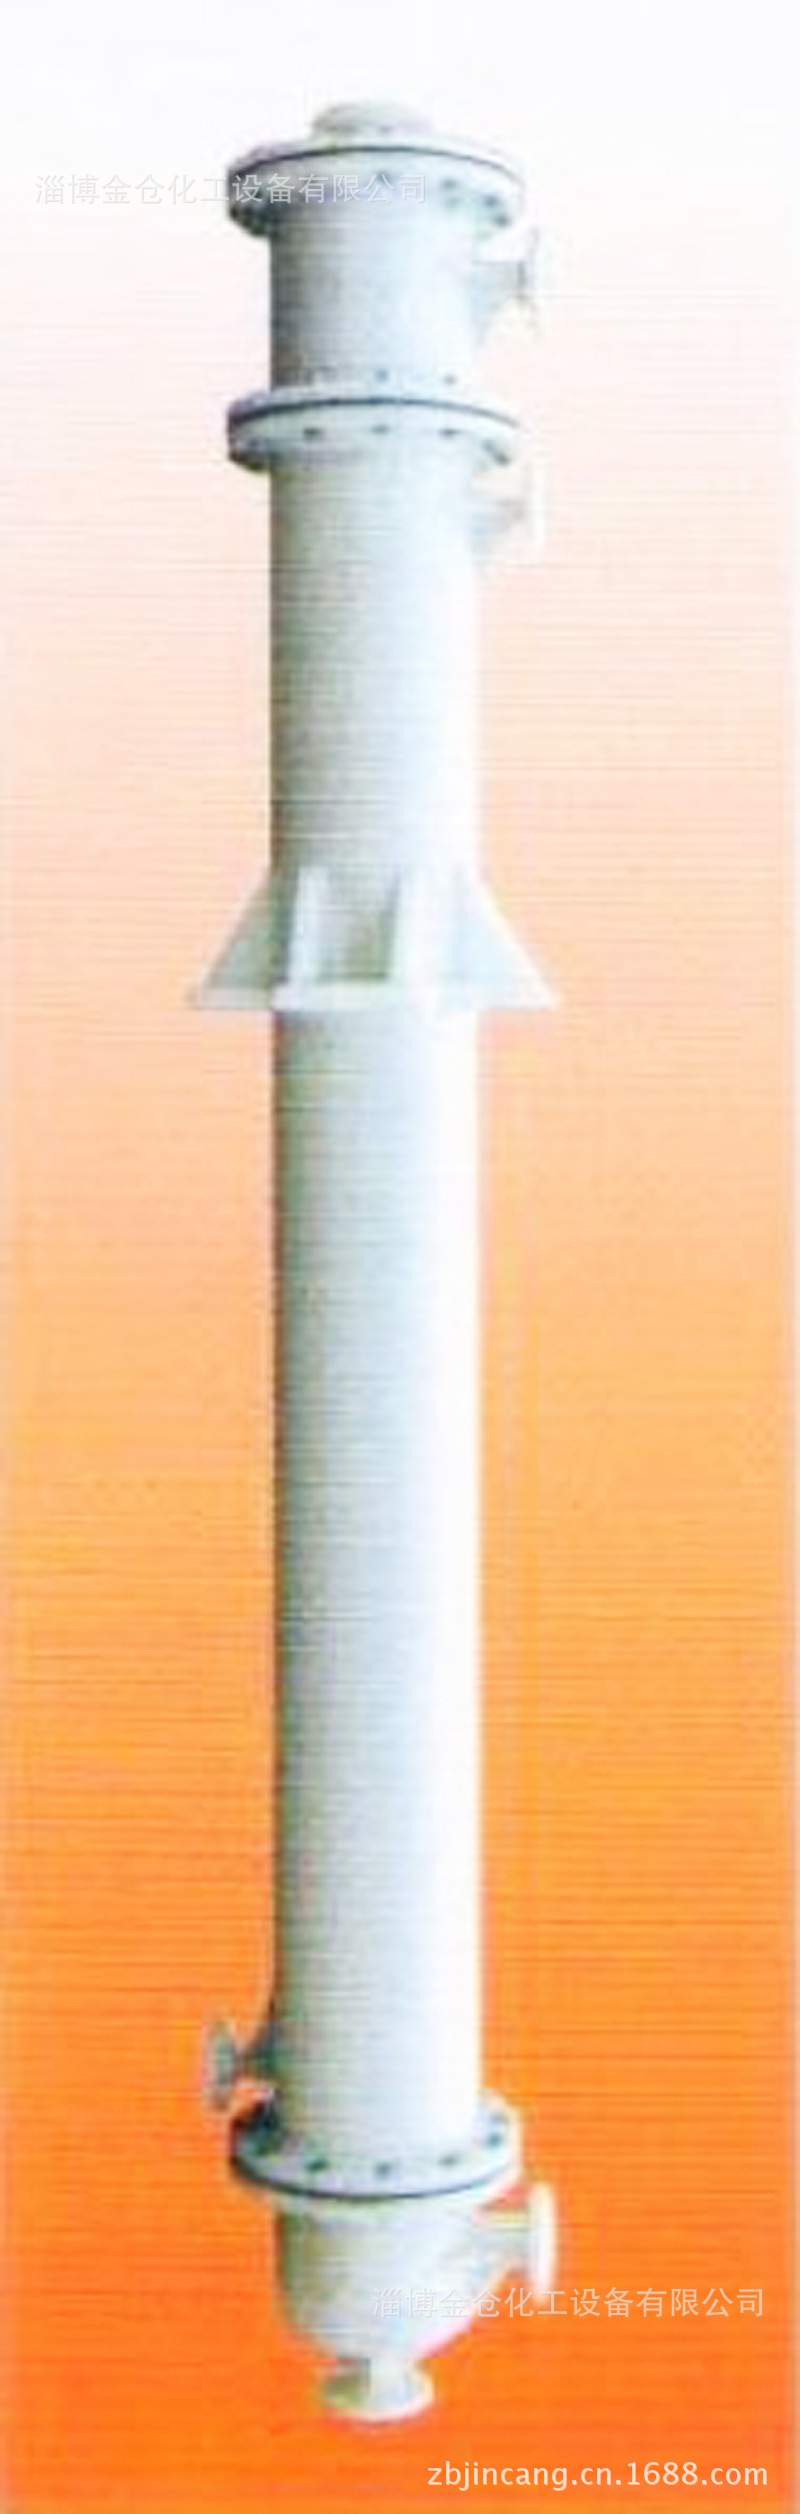 石墨改性聚丙烯列管式降膜吸收器